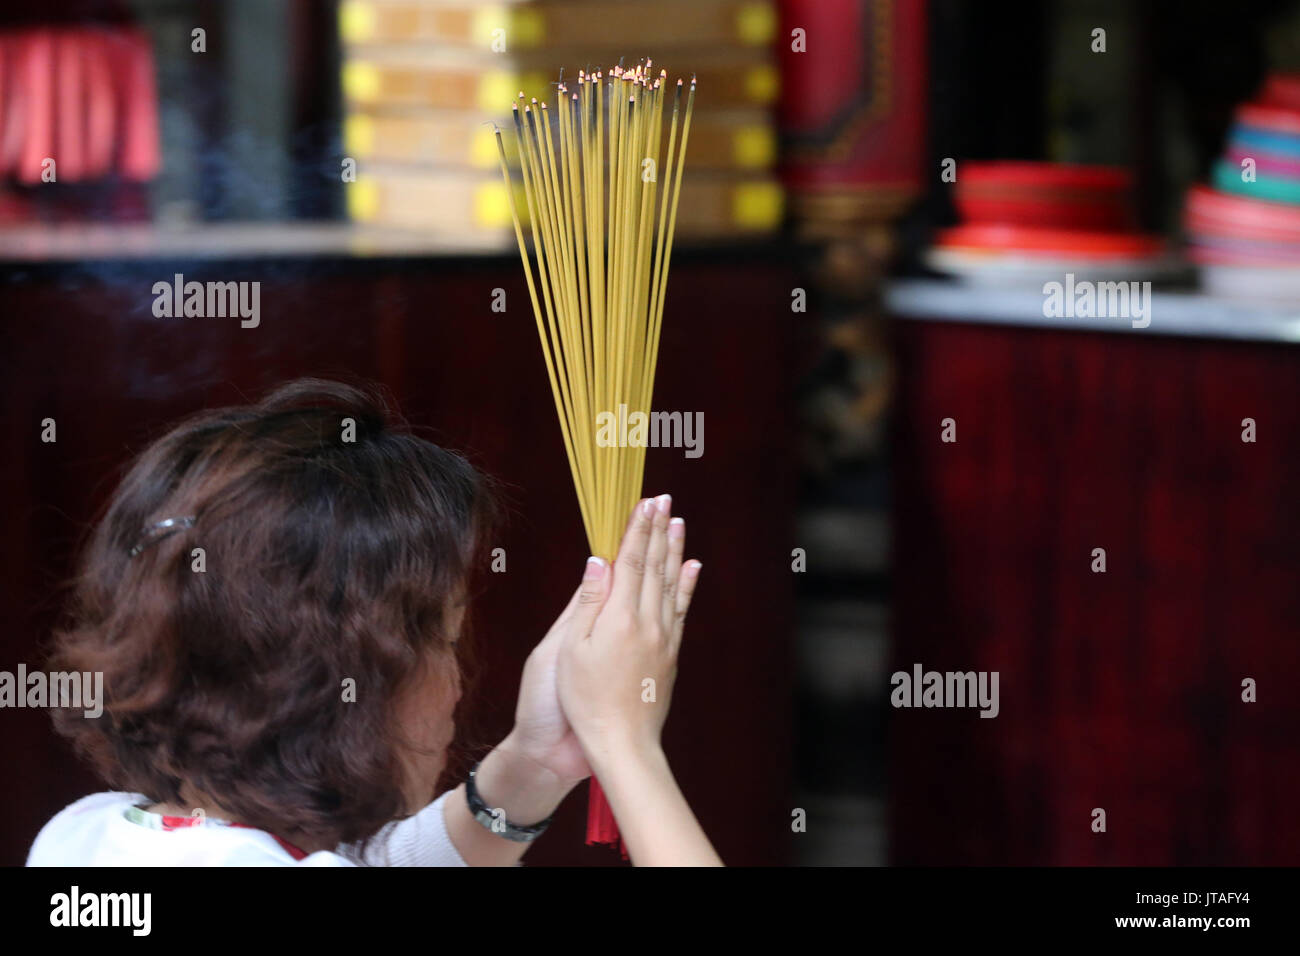 Adorateur d'encens brûlant, temple taoïste, une pagode de Phuoc Hoi Quan, Ho Chi Minh City, Vietnam, Indochine, Asie du Sud-Est, l'Asie Banque D'Images